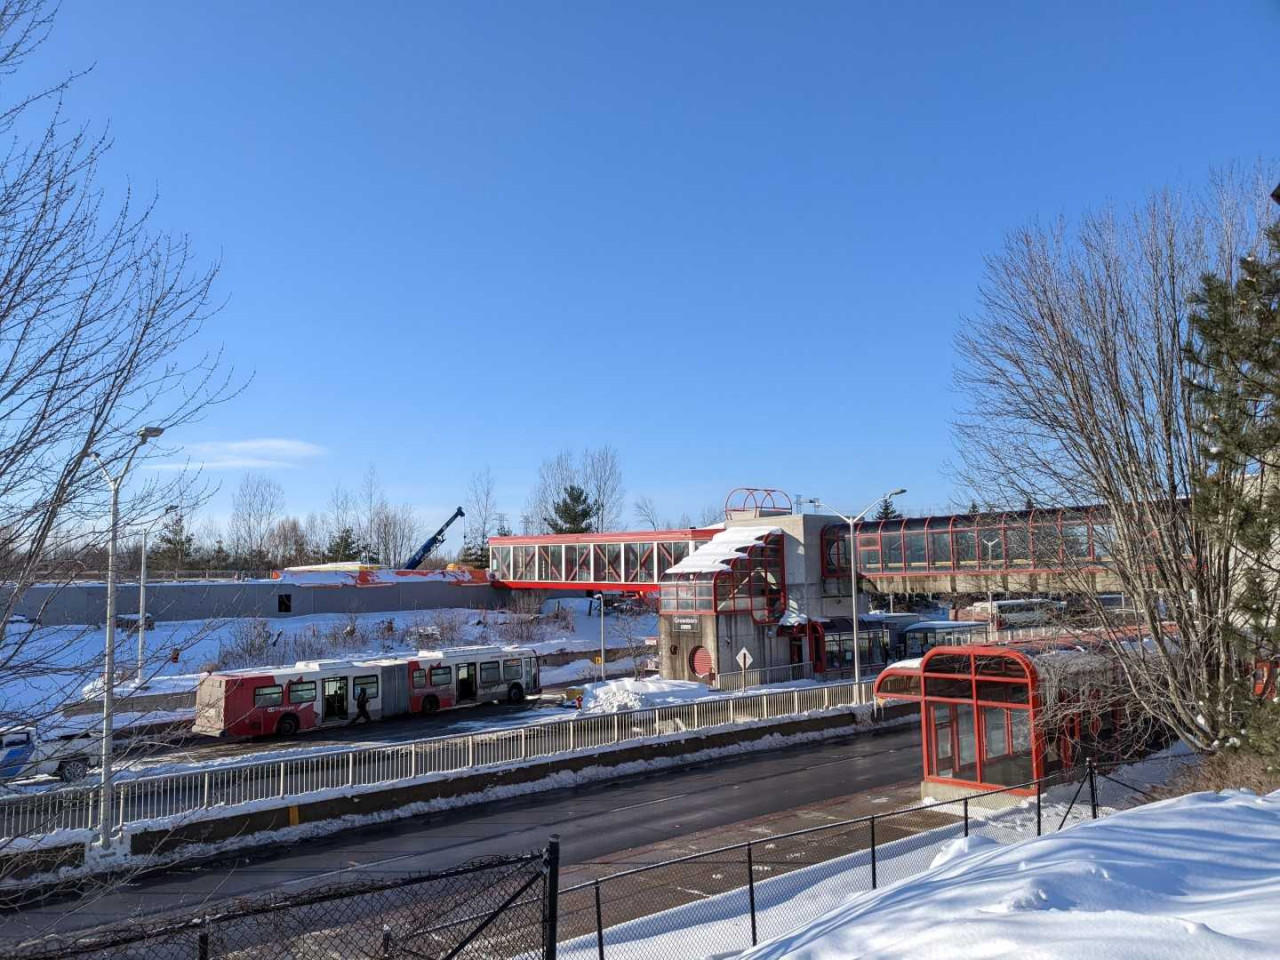 Snapshot of Greenboro Station - January 26, 2022